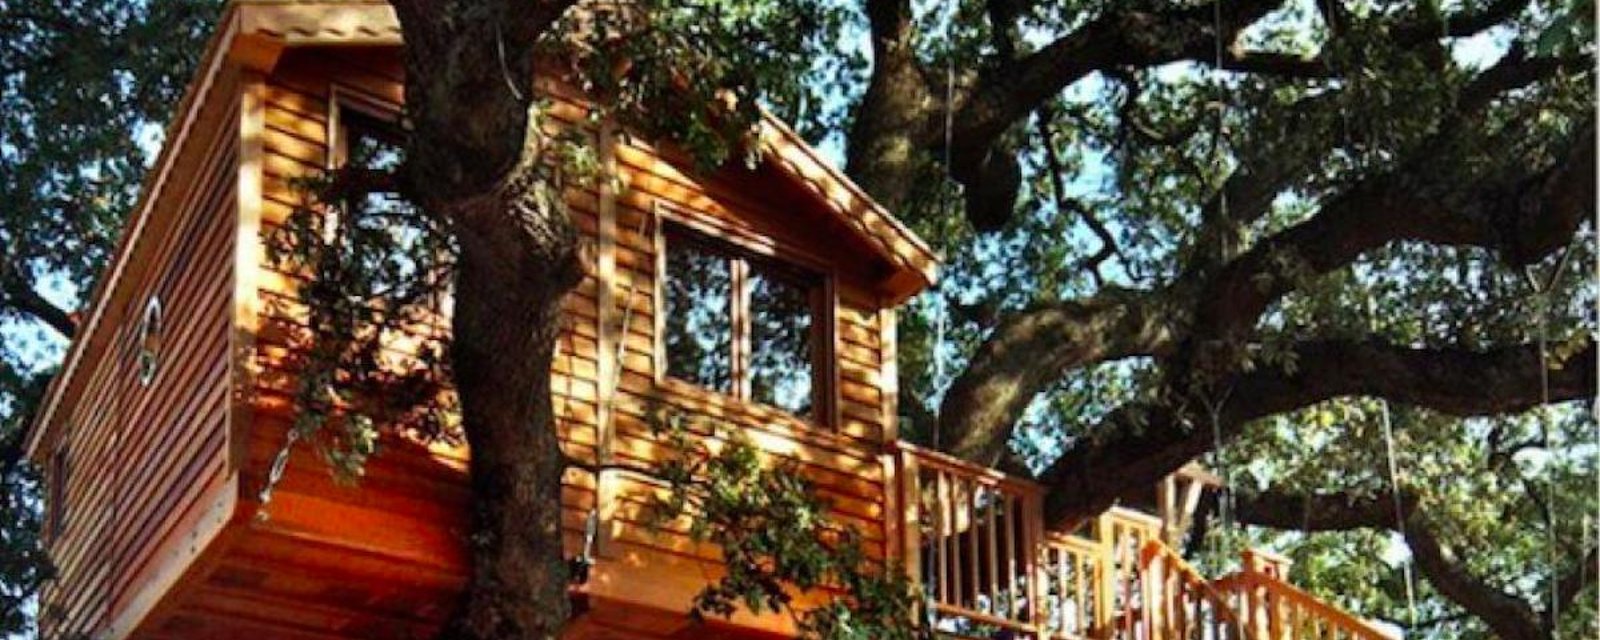 13 inspirations pour construire une maison dans les arbres